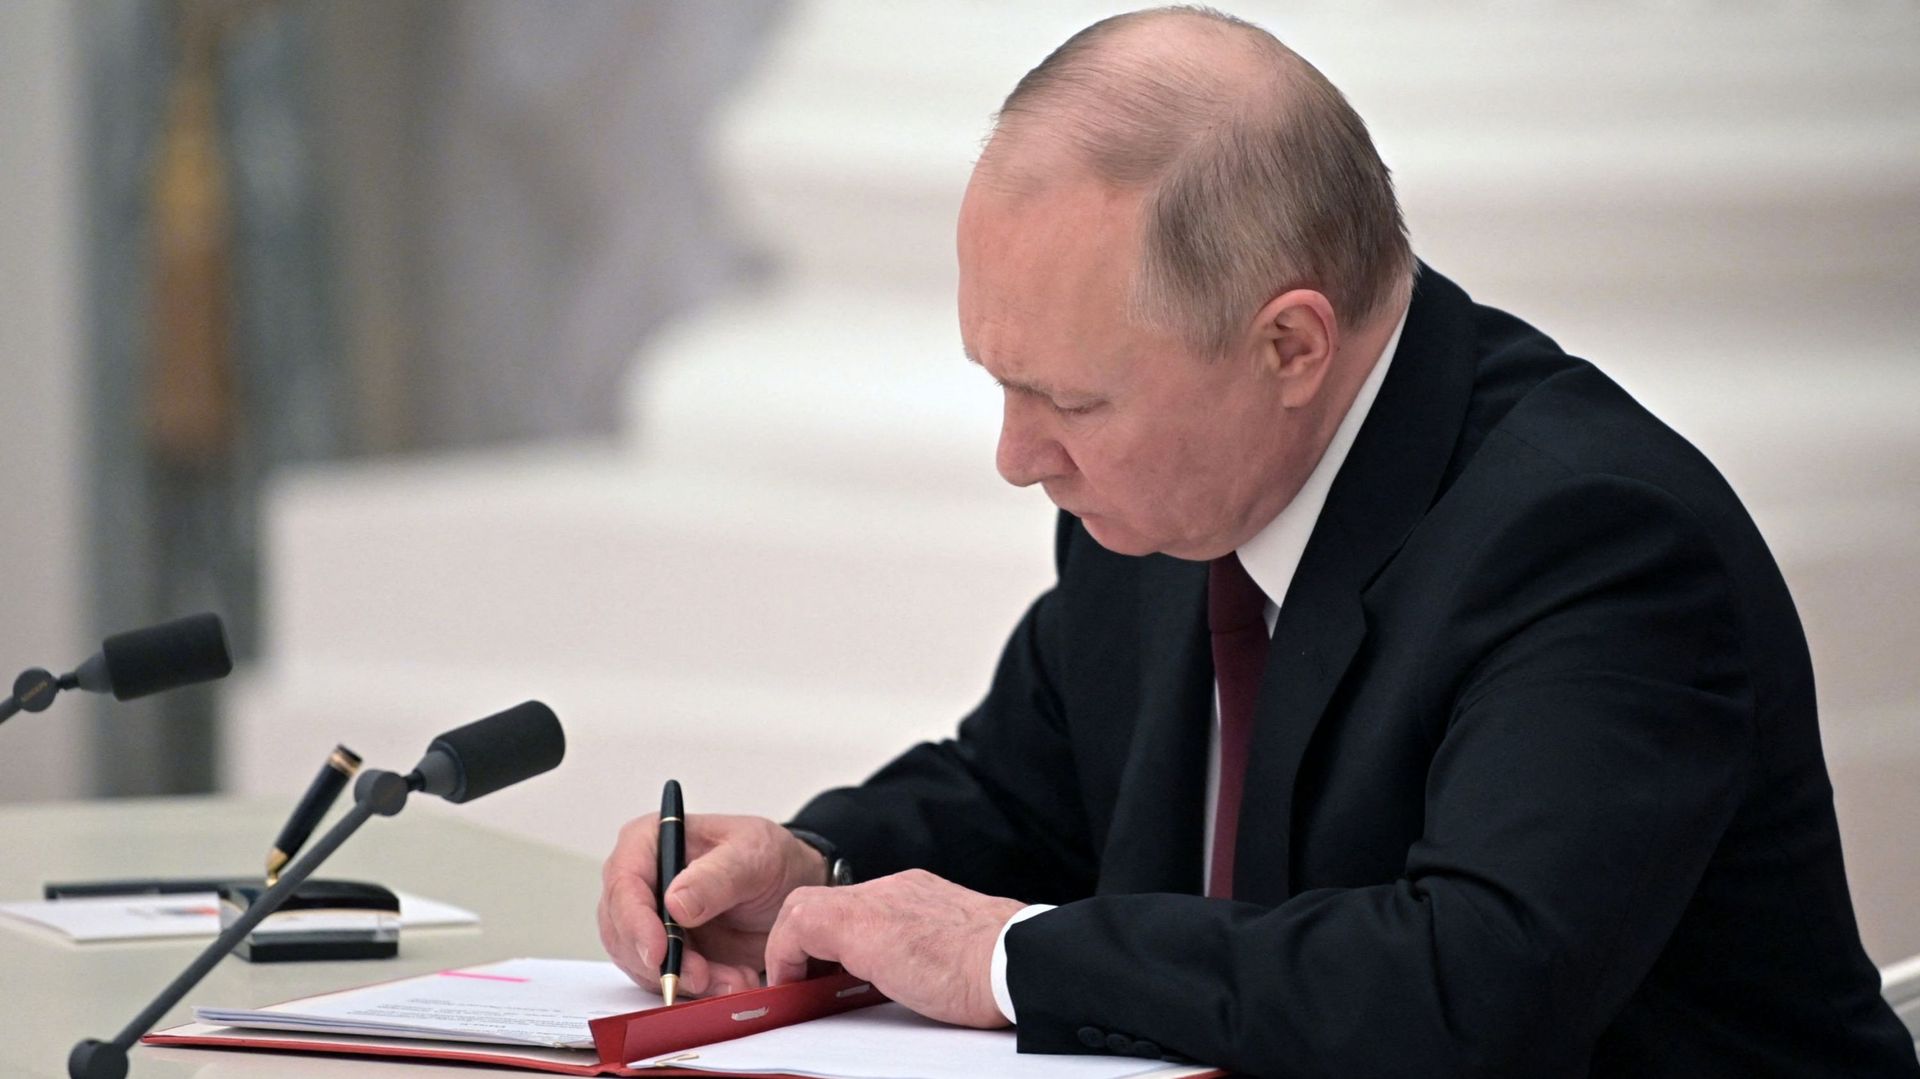 Le président russe Vladimir Poutine signe des documents, dont un décret reconnaissant deux régions sécessionnistes soutenues par la Russie dans l'est de l'Ukraine comme indépendantes, lors d'une cérémonie au Kremlin à Moscou le 21 février 2022. Alexeï NIK